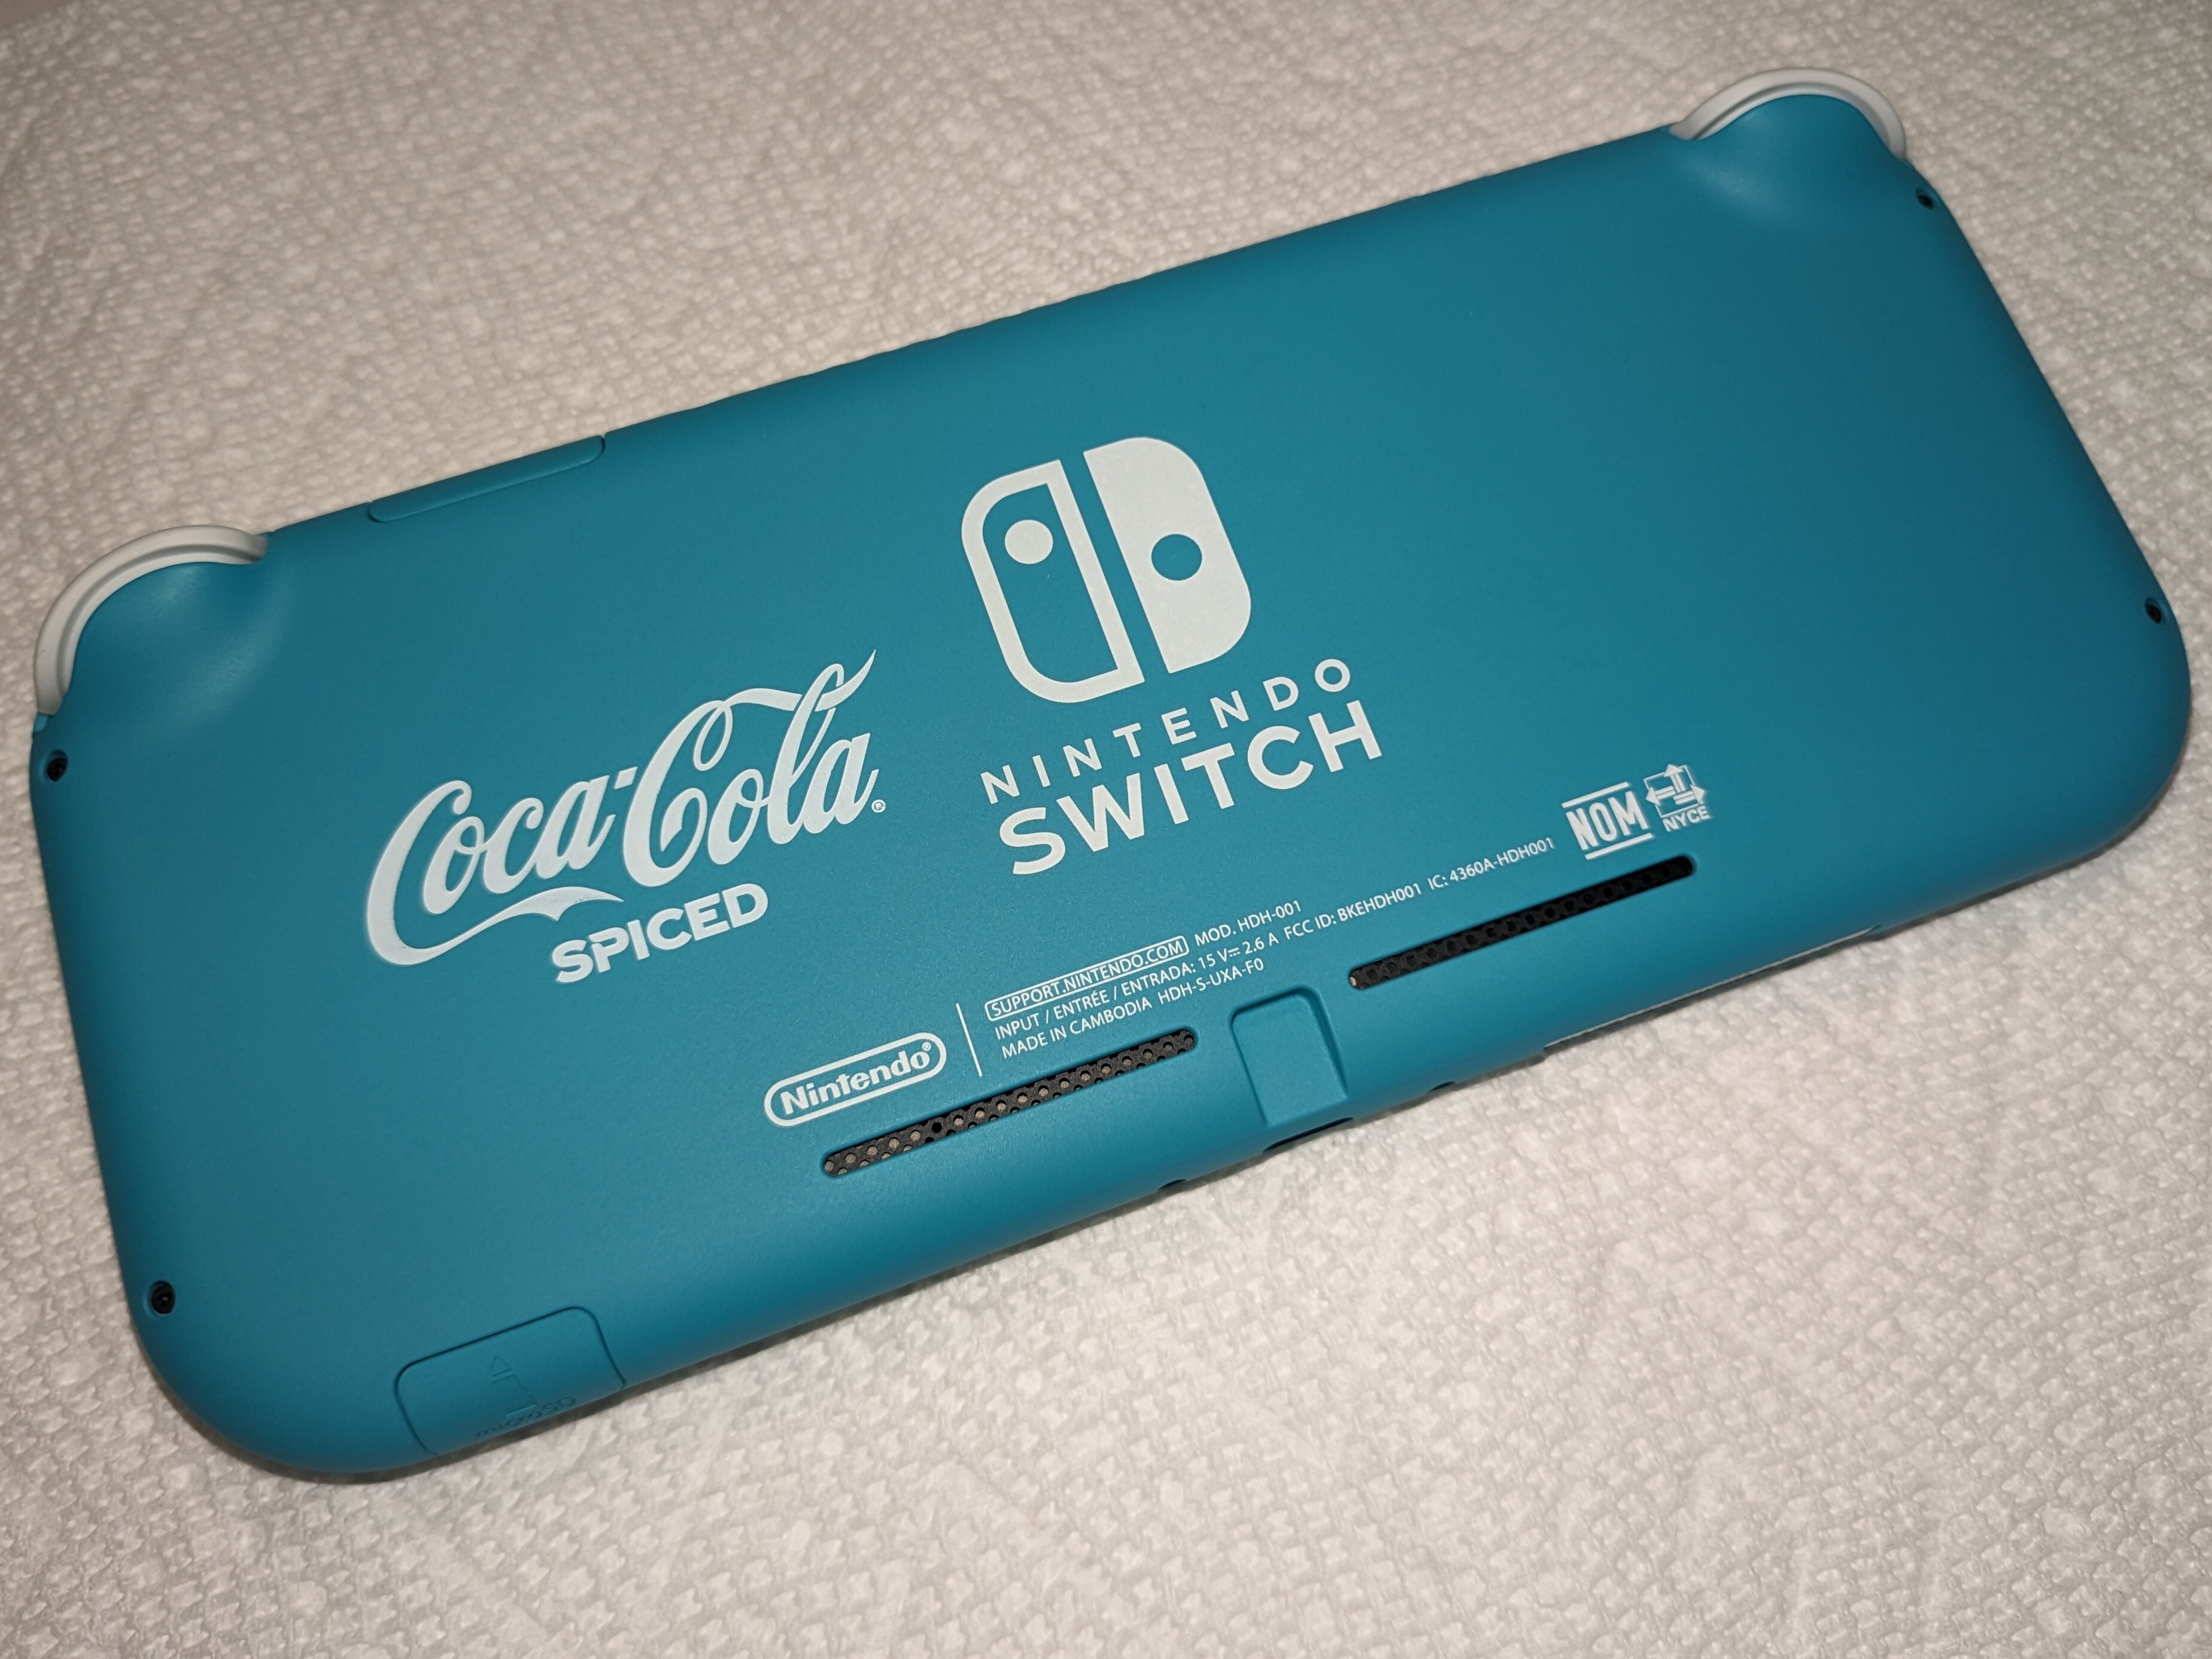 Nintendo Switch Lite Coca-Cola Spiced Console